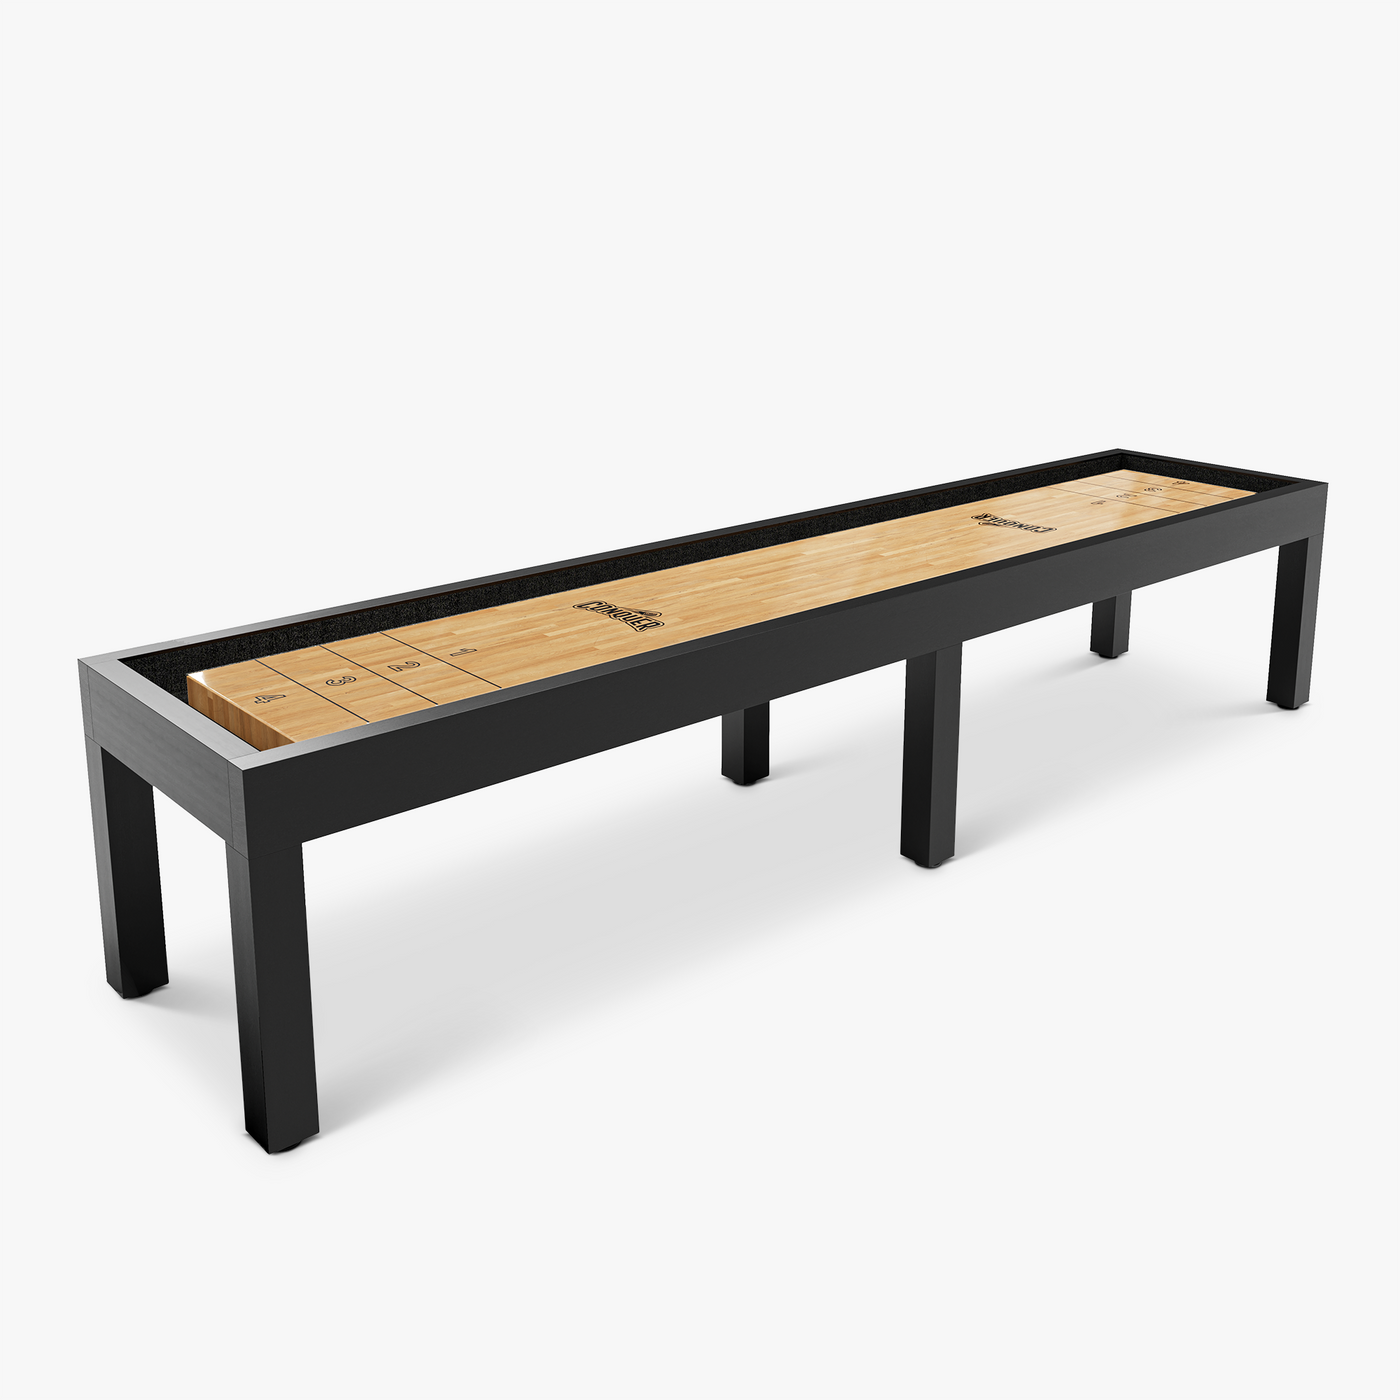 Titan Shuffleboard Table